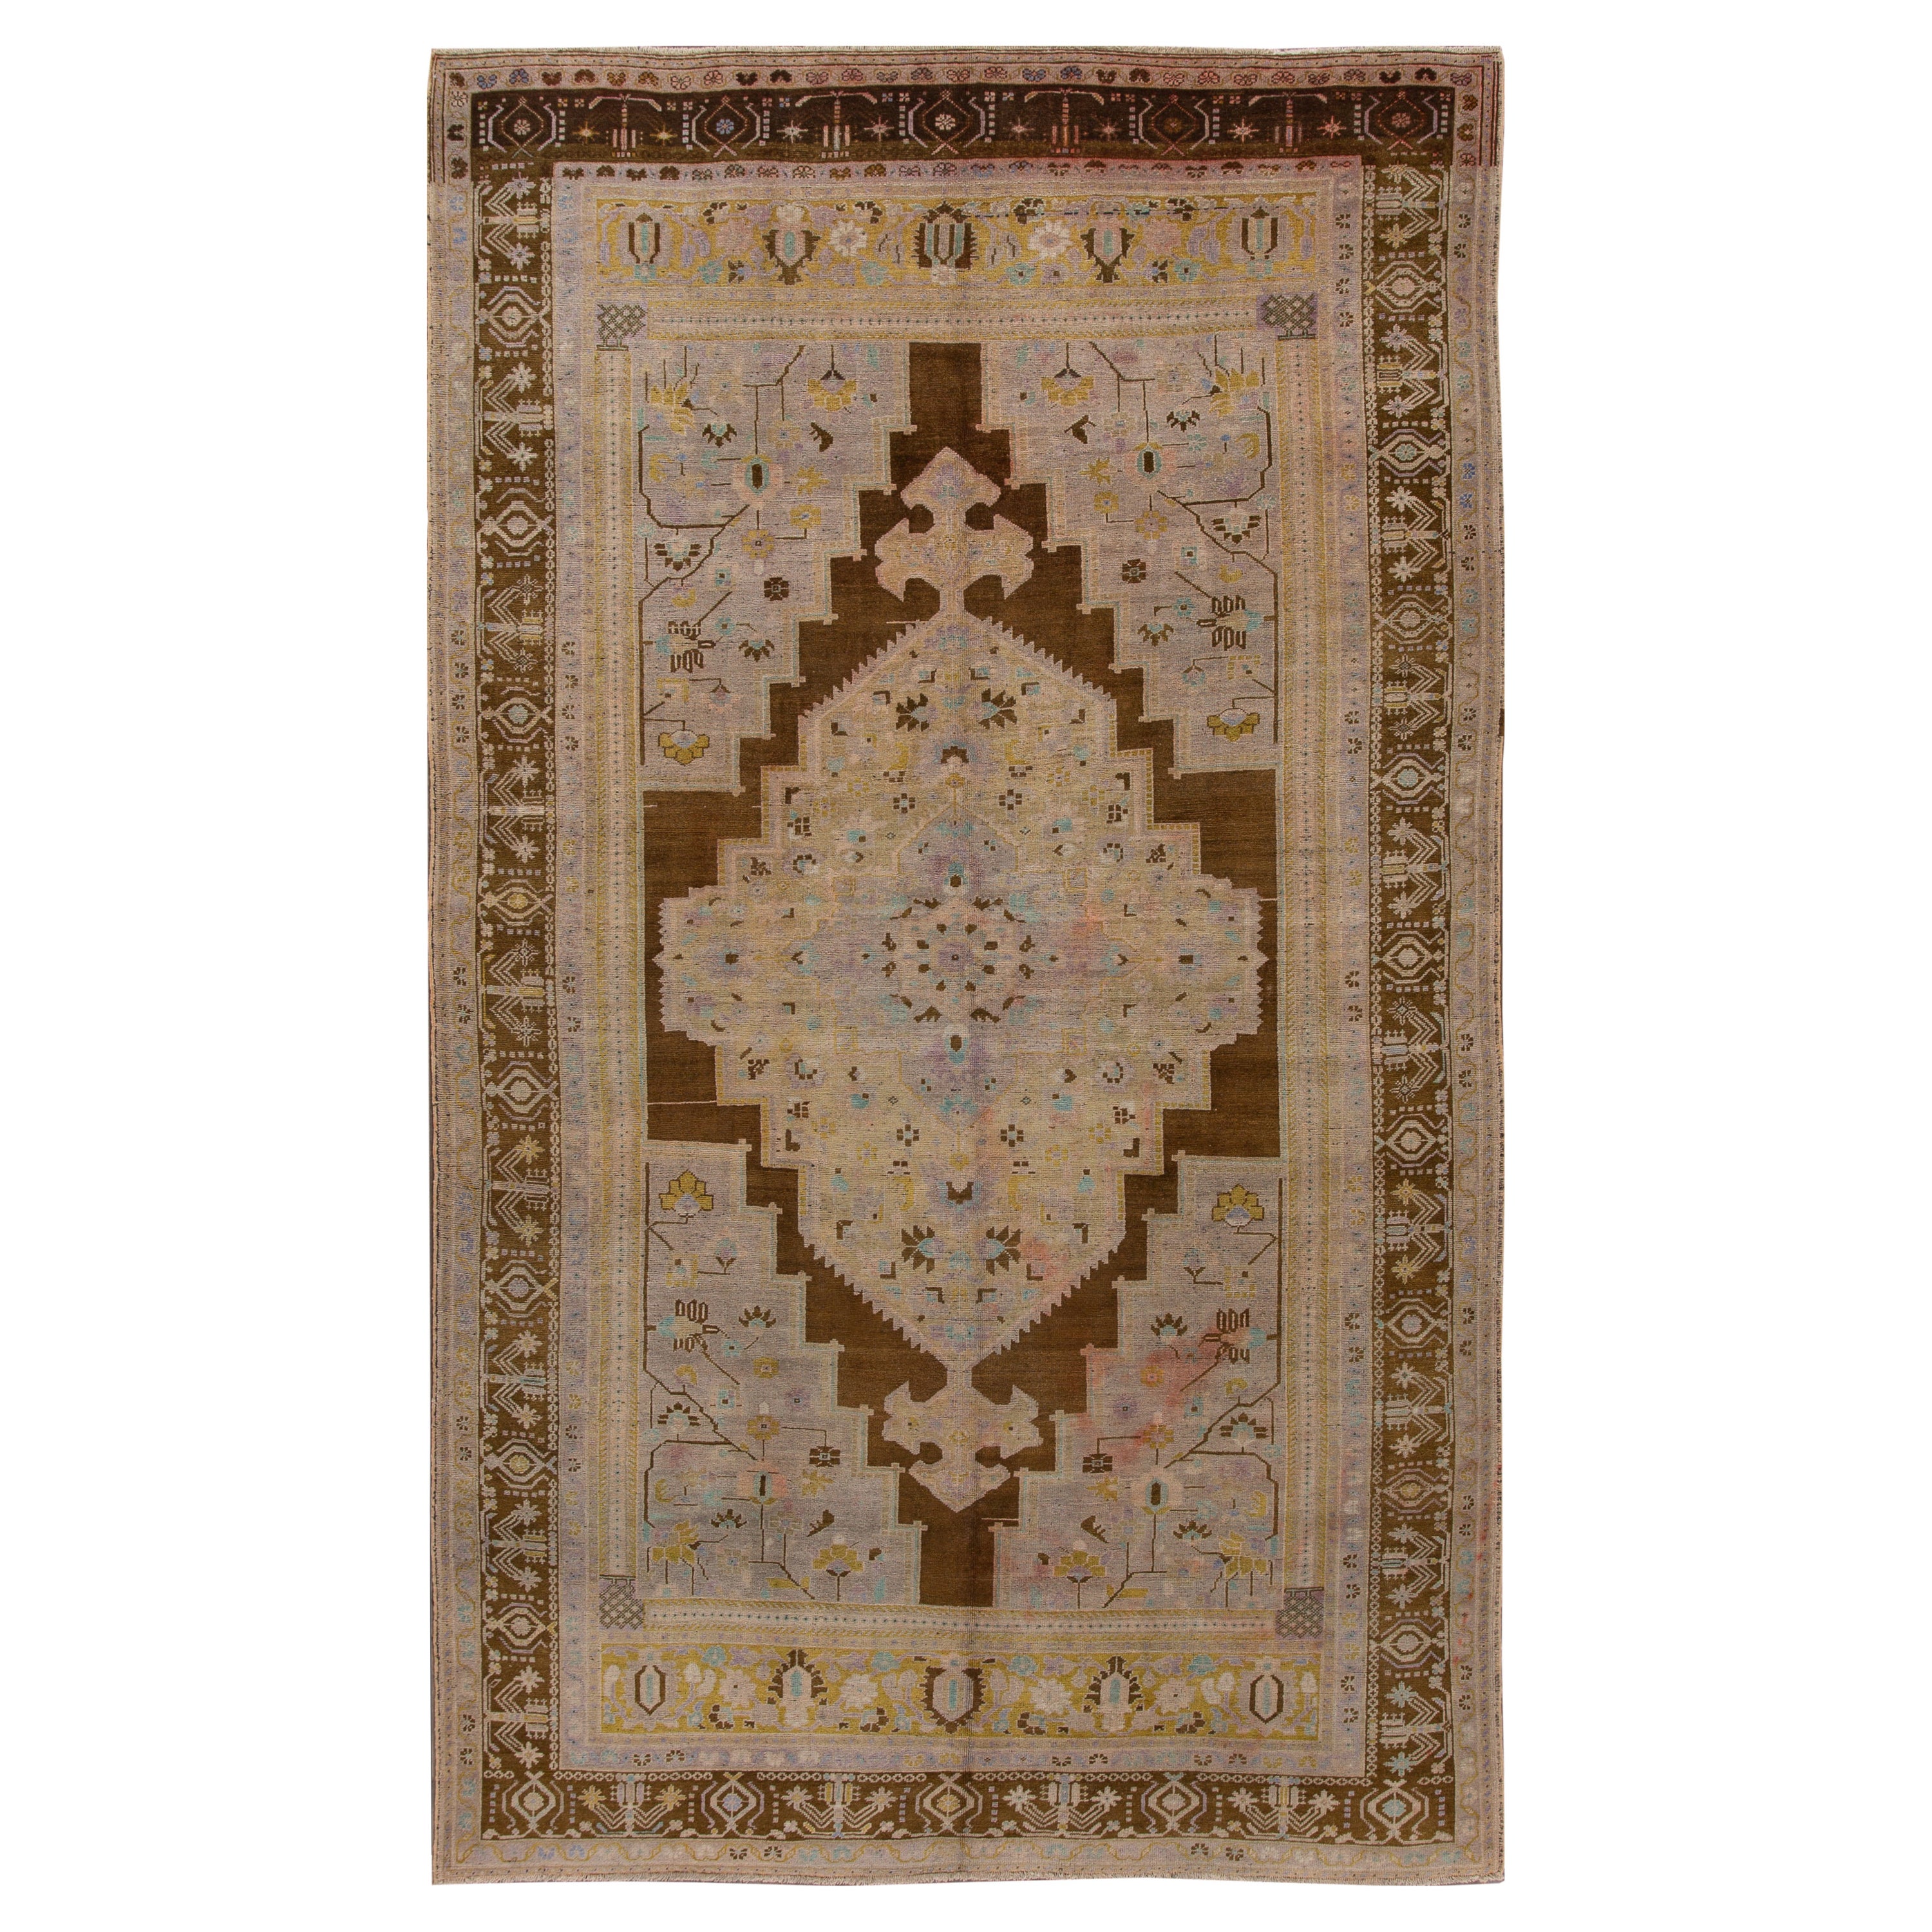 Antique Khotan Handmade Medallion Floral Motif Tan Room Size Wool Rug For Sale